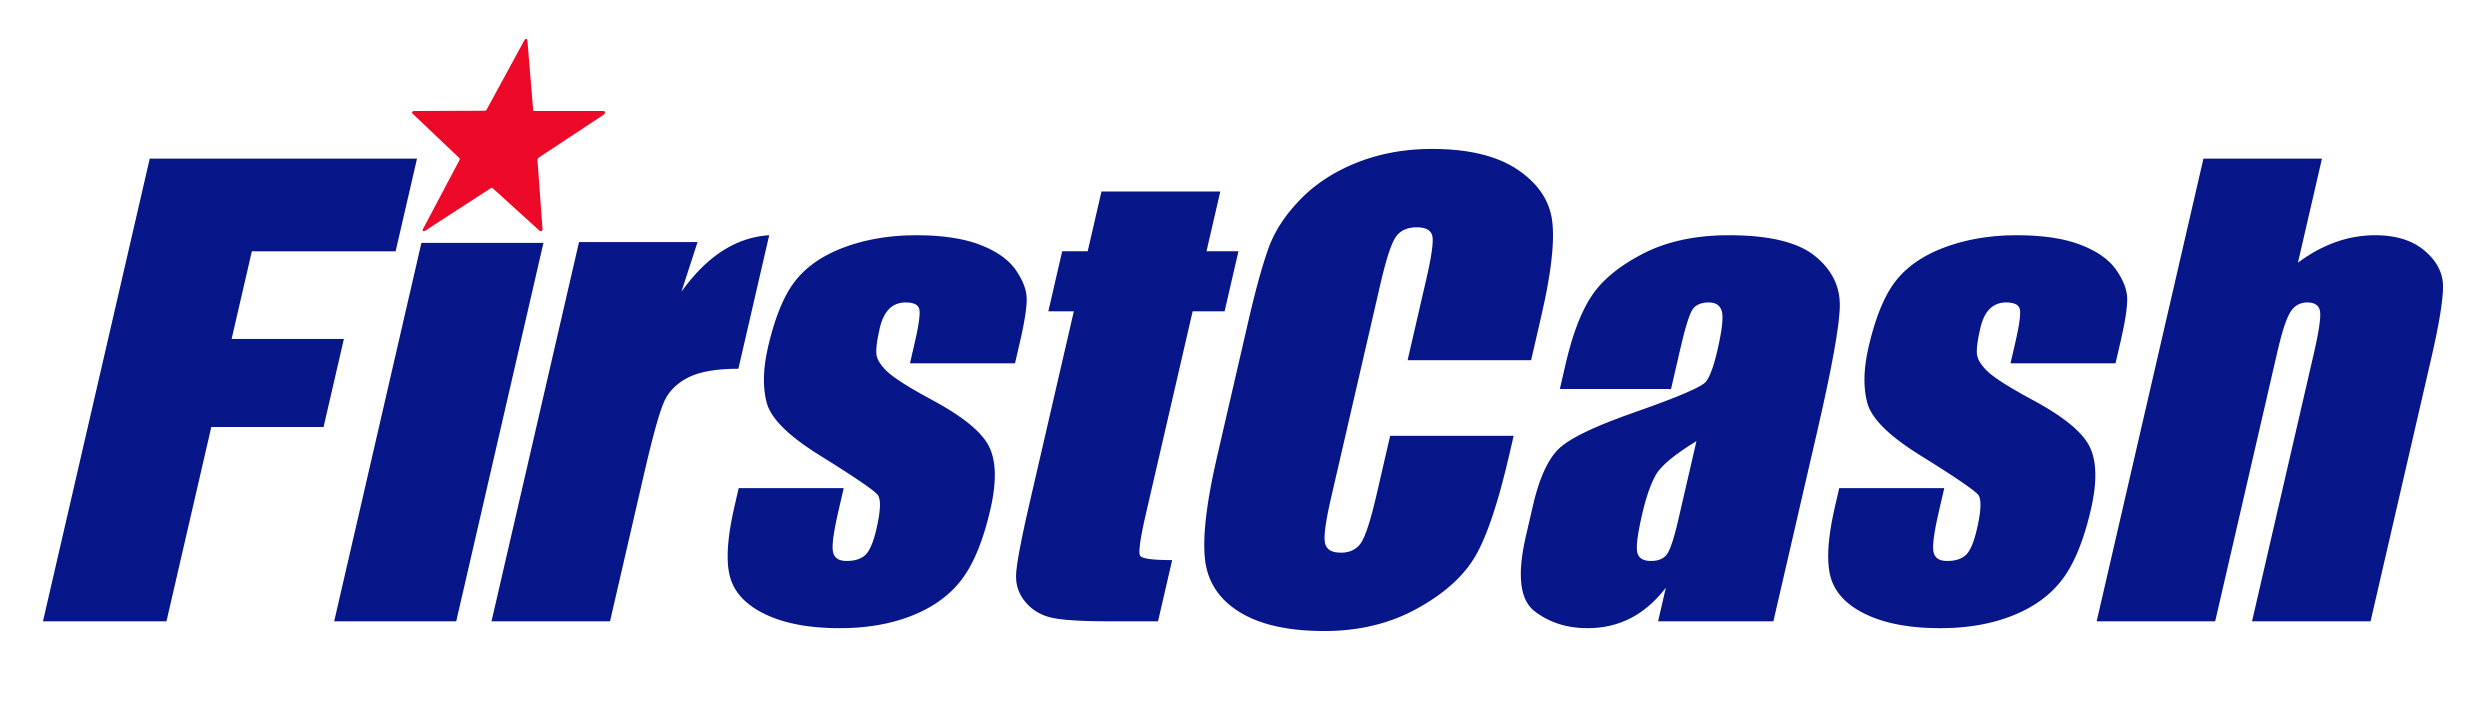 firstcash_logo.jpg